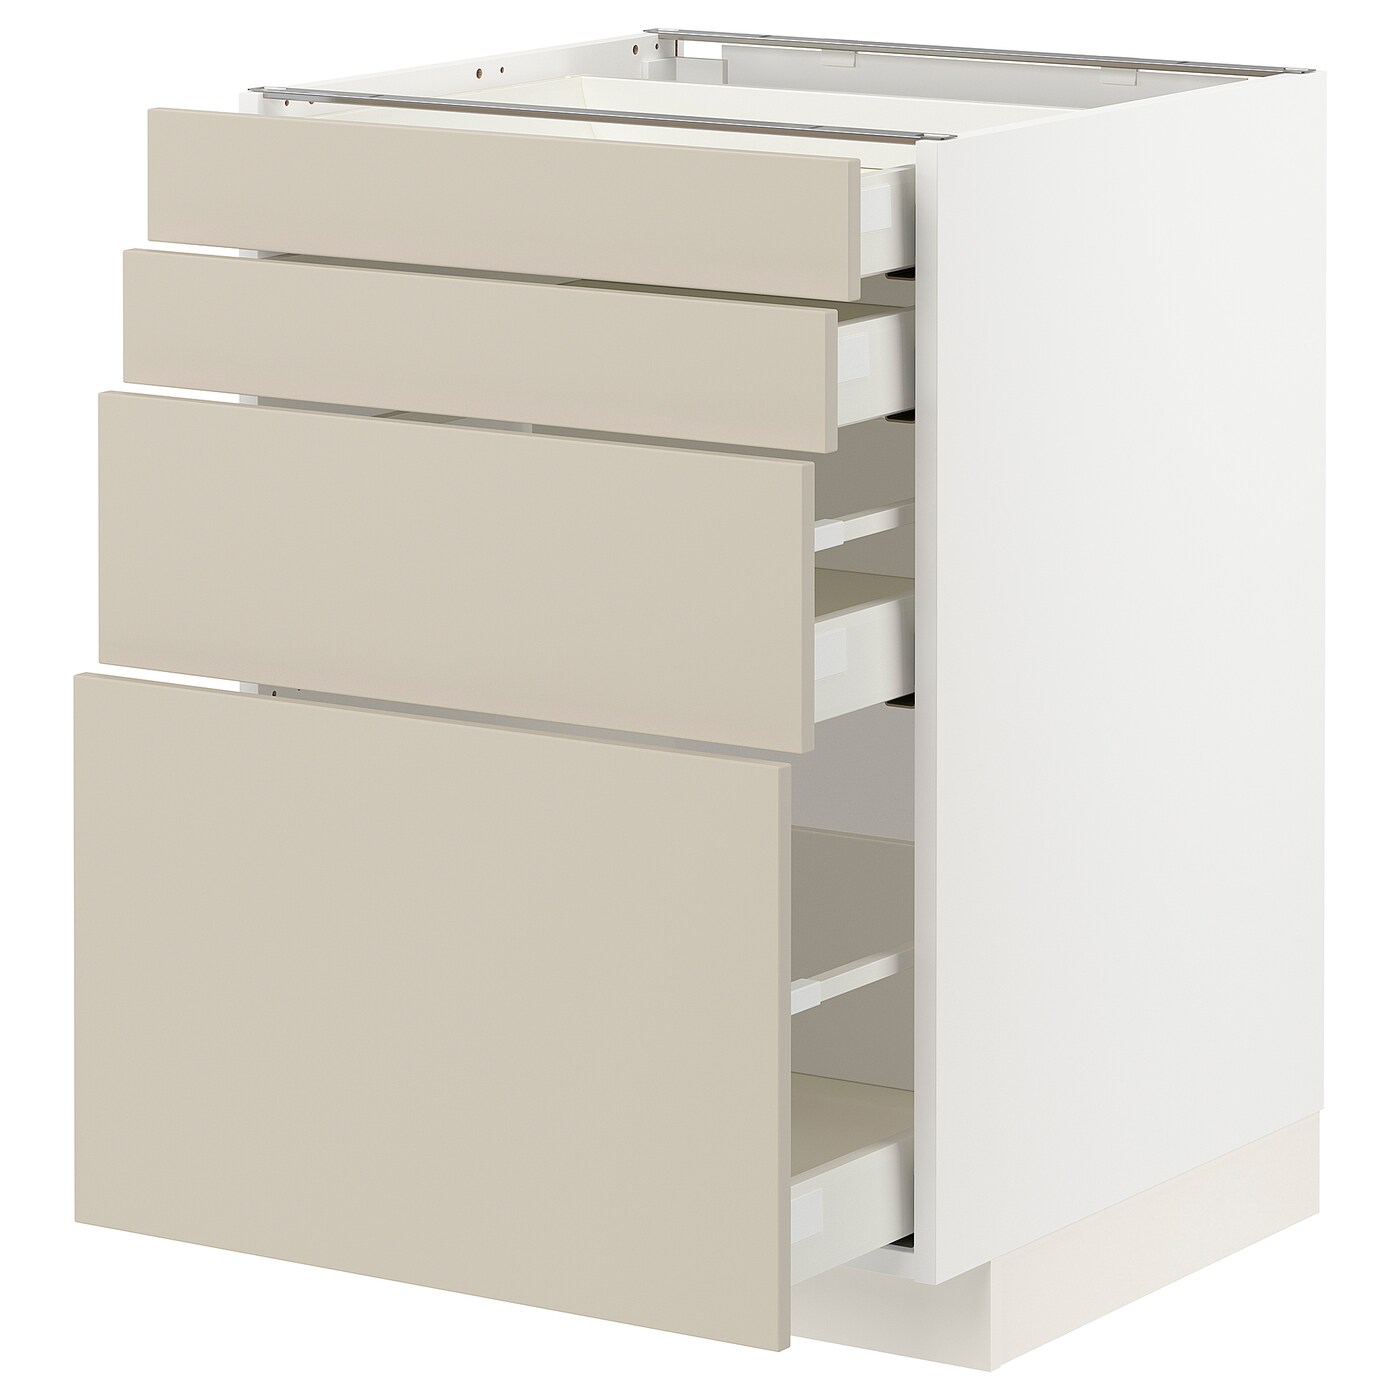 Напольный шкаф  - IKEA METOD MAXIMERA, 88x61,6x60см, белый/светло-серый, МЕТОД МАКСИМЕРА ИКЕА